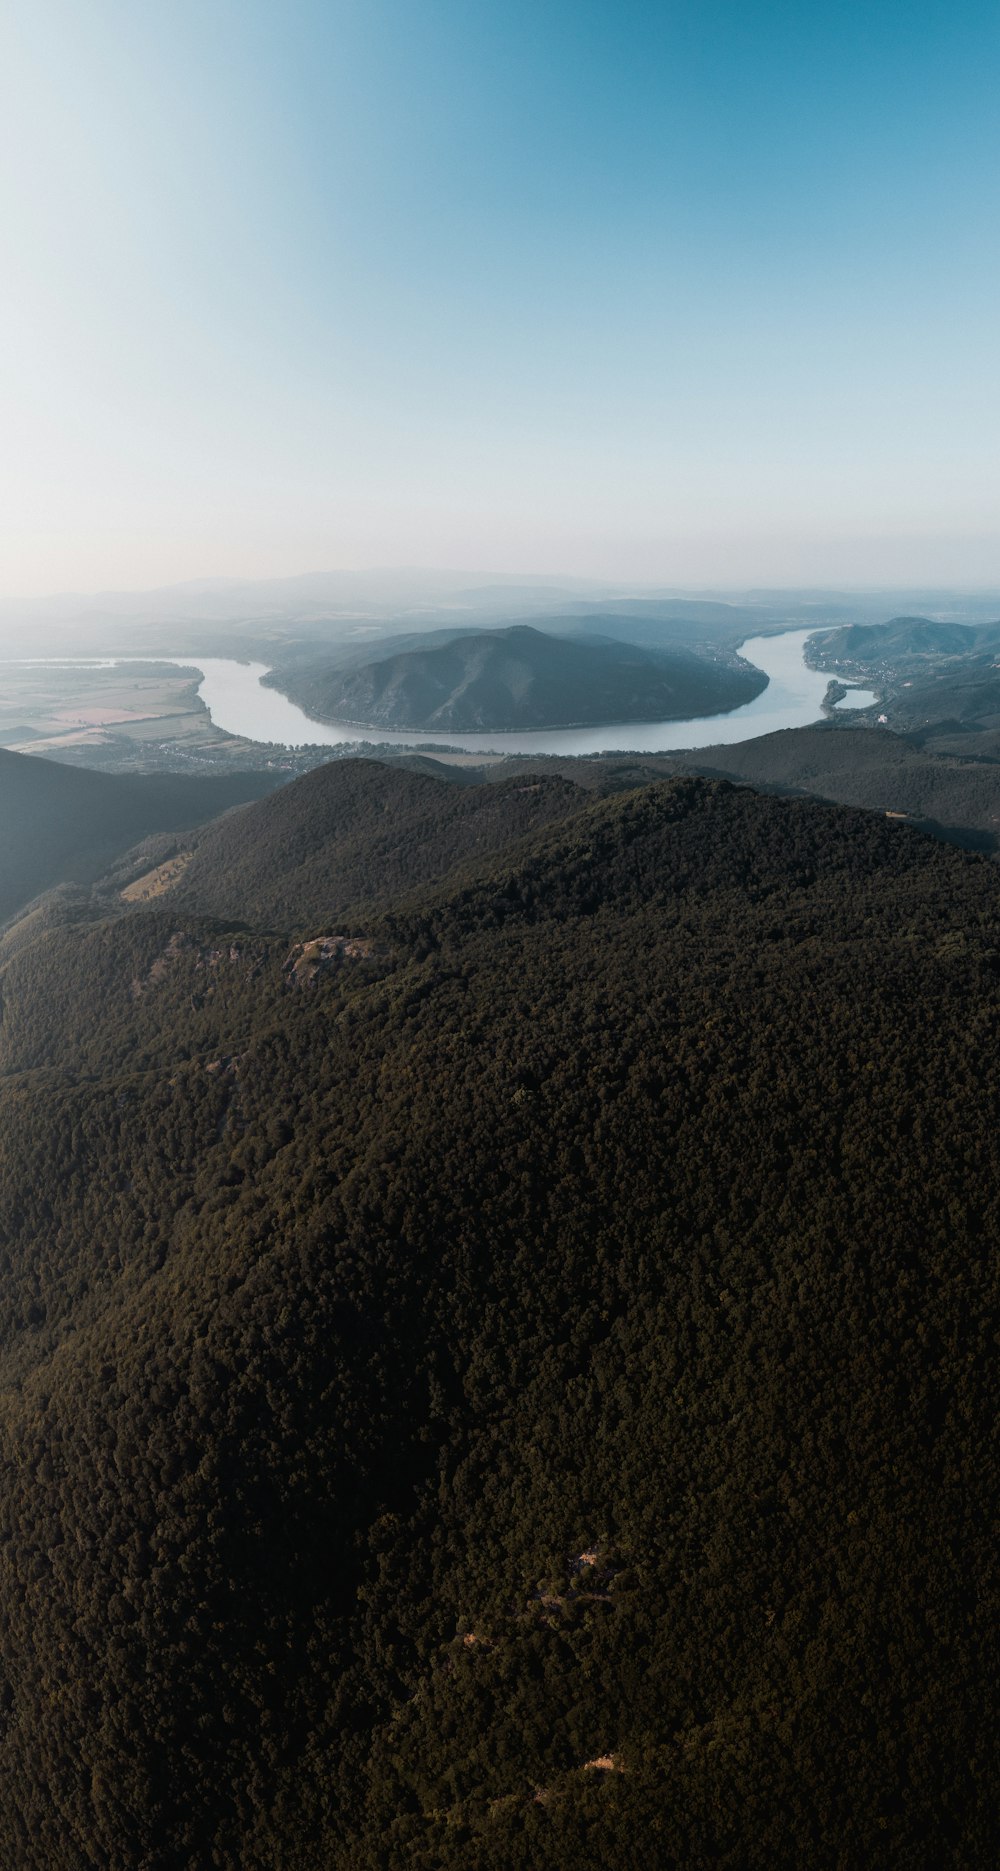 Colline verdi e fiume nella fotografia aerea